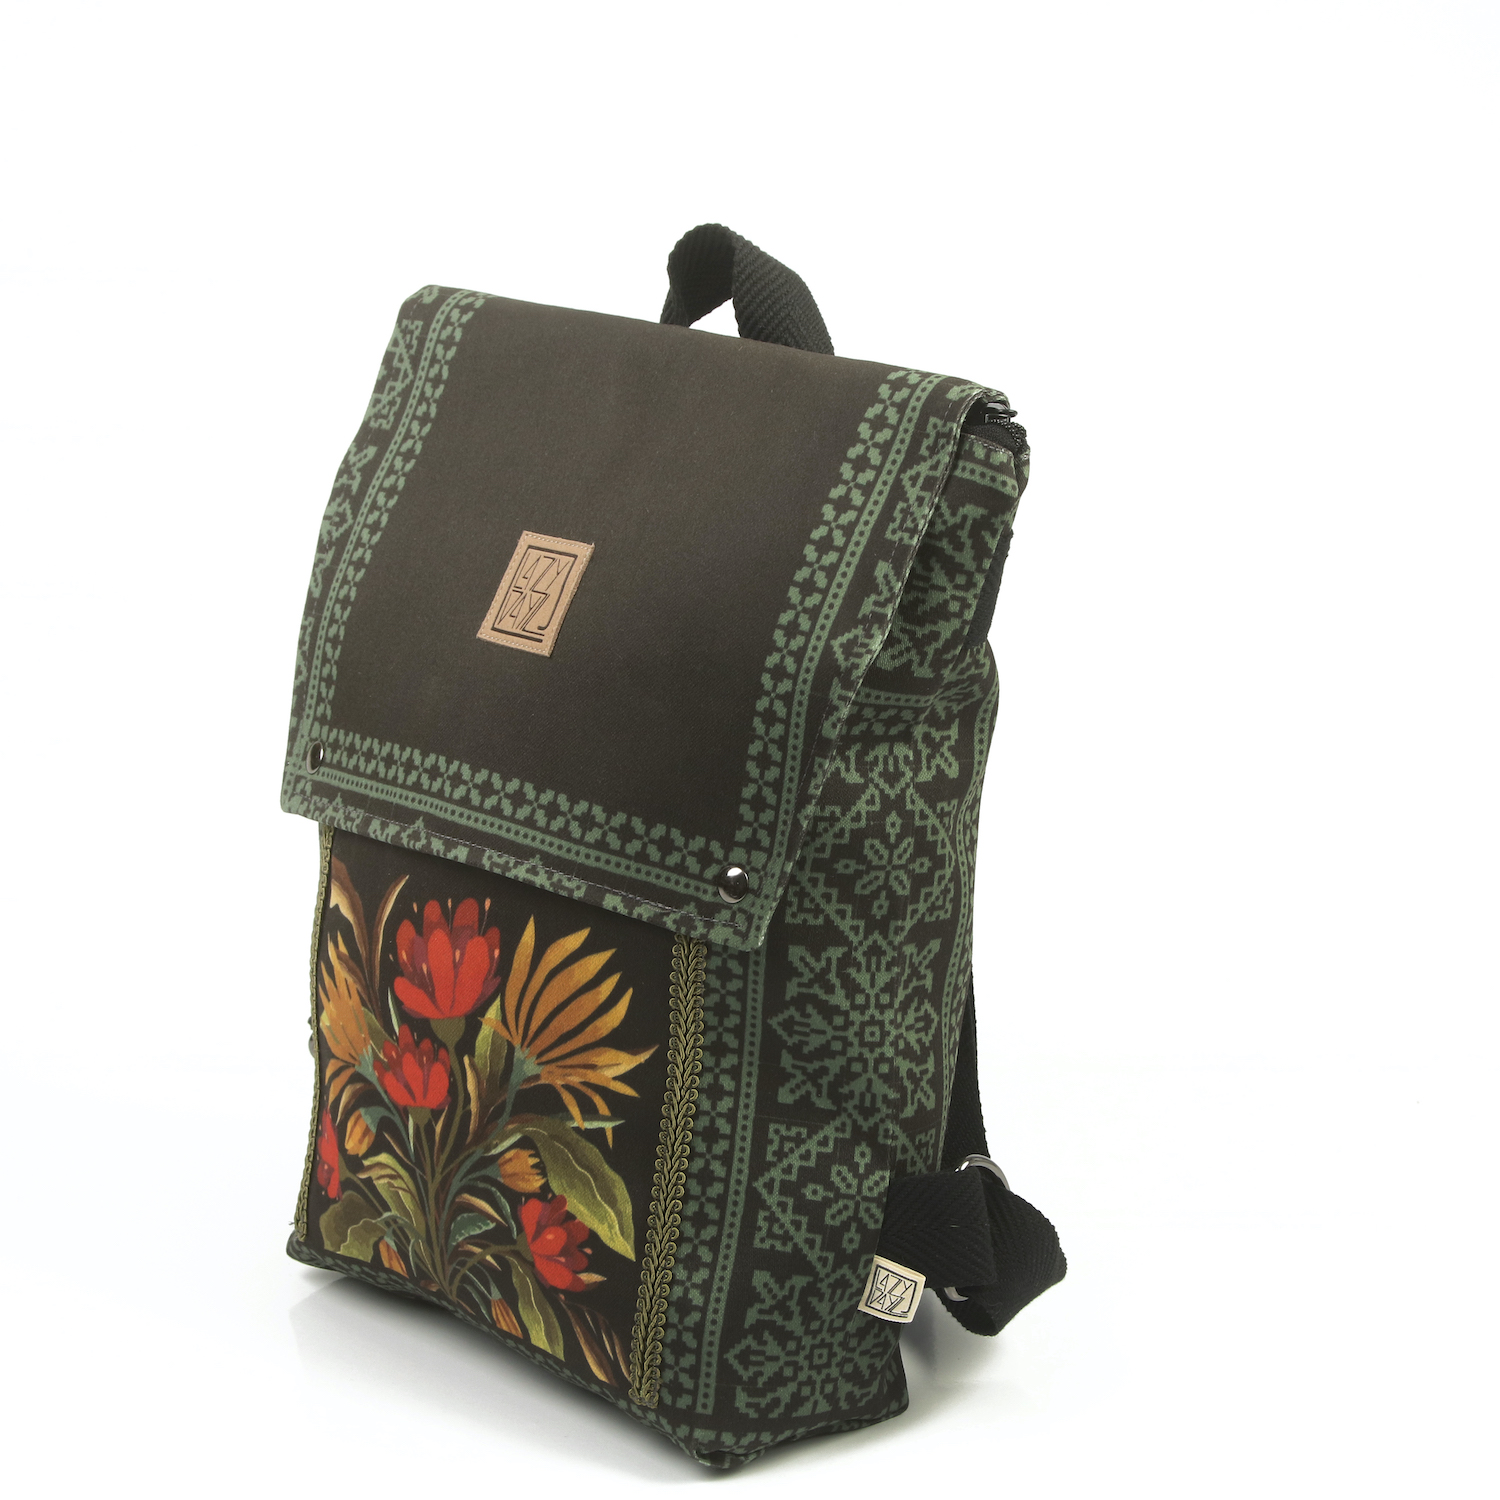 LazyDayz Designs Backpack γυναικείος σάκος πλάτης χειροποίητος bb0707b